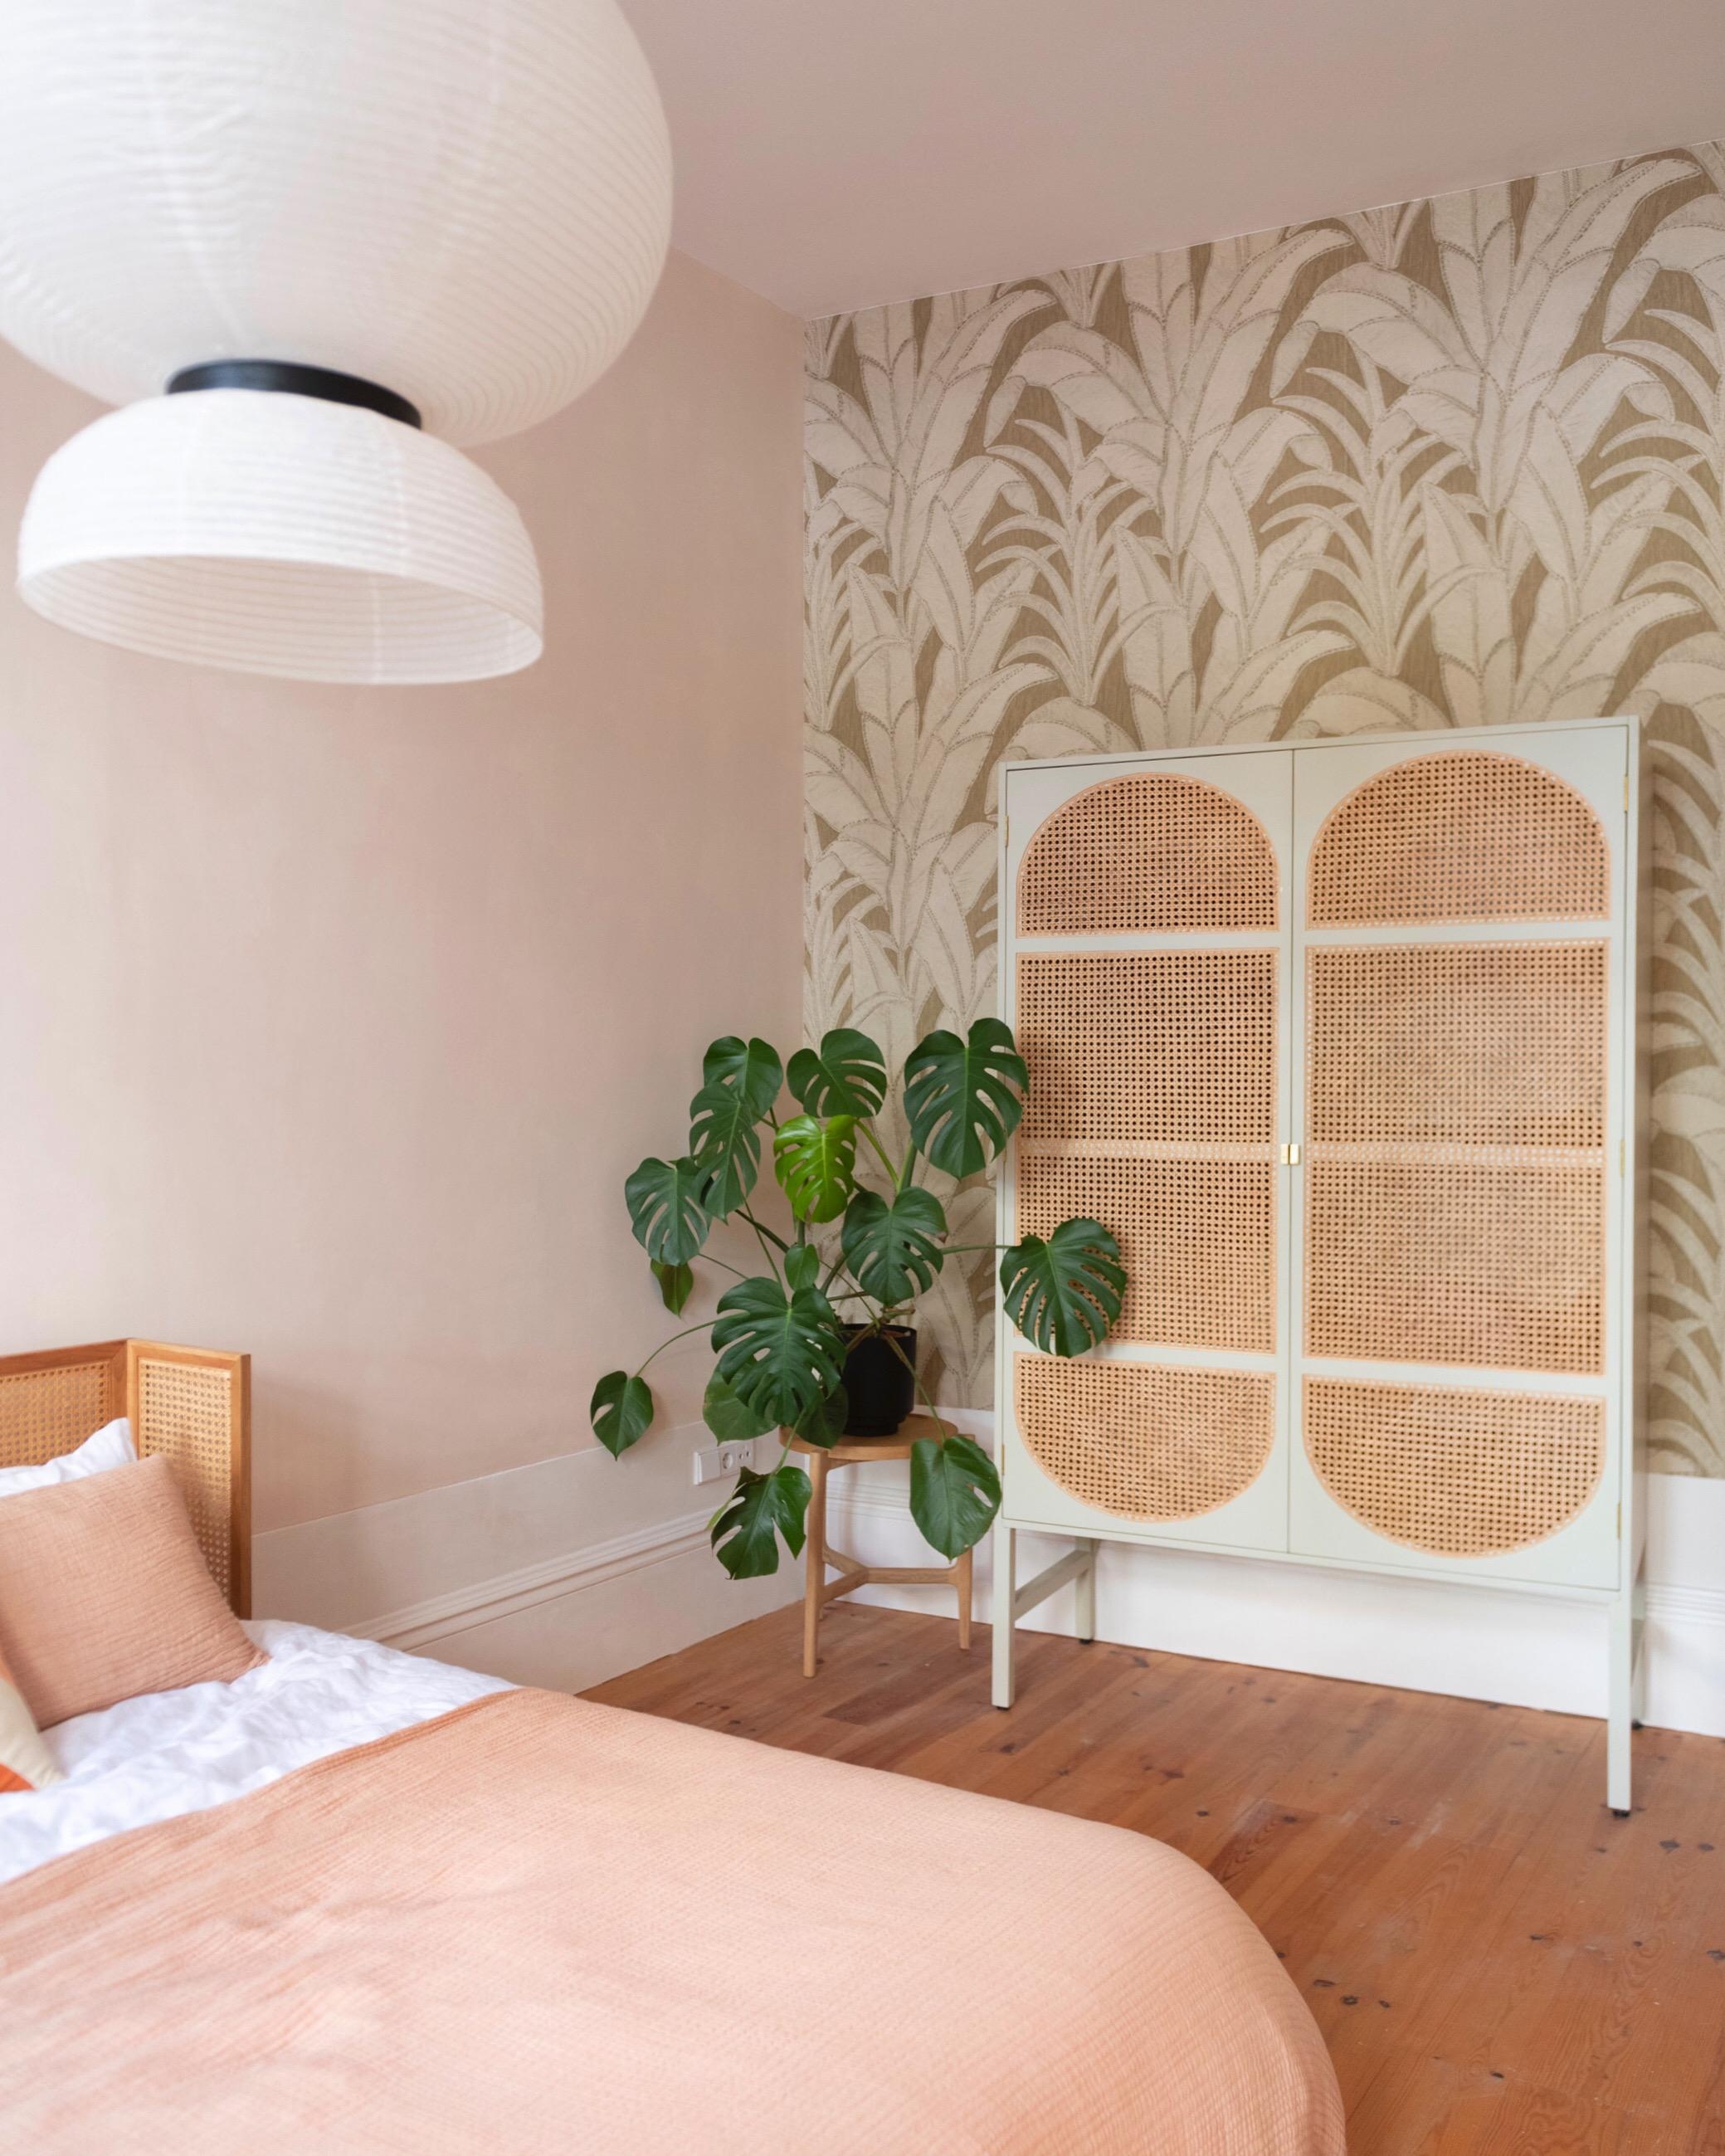 Unser portugiesisches Schlafzimmer mit Dschungeltapete 🌿
#schlafzimmer #rattan #tapete